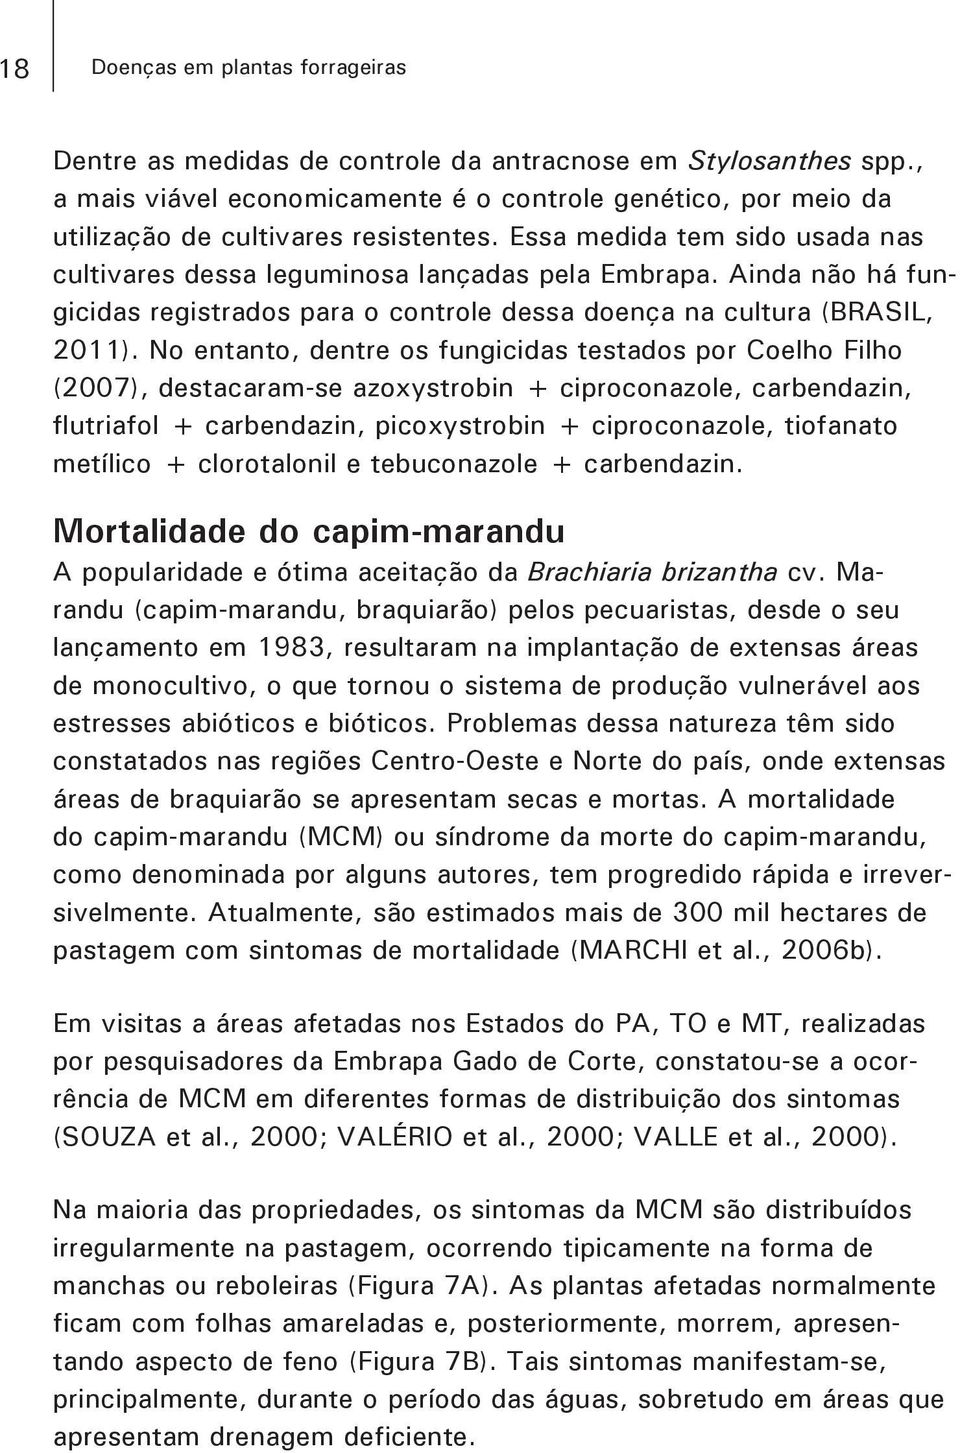 Ainda não há fungicidas registrados para o controle dessa doença na cultura (BRASIL, 2011).